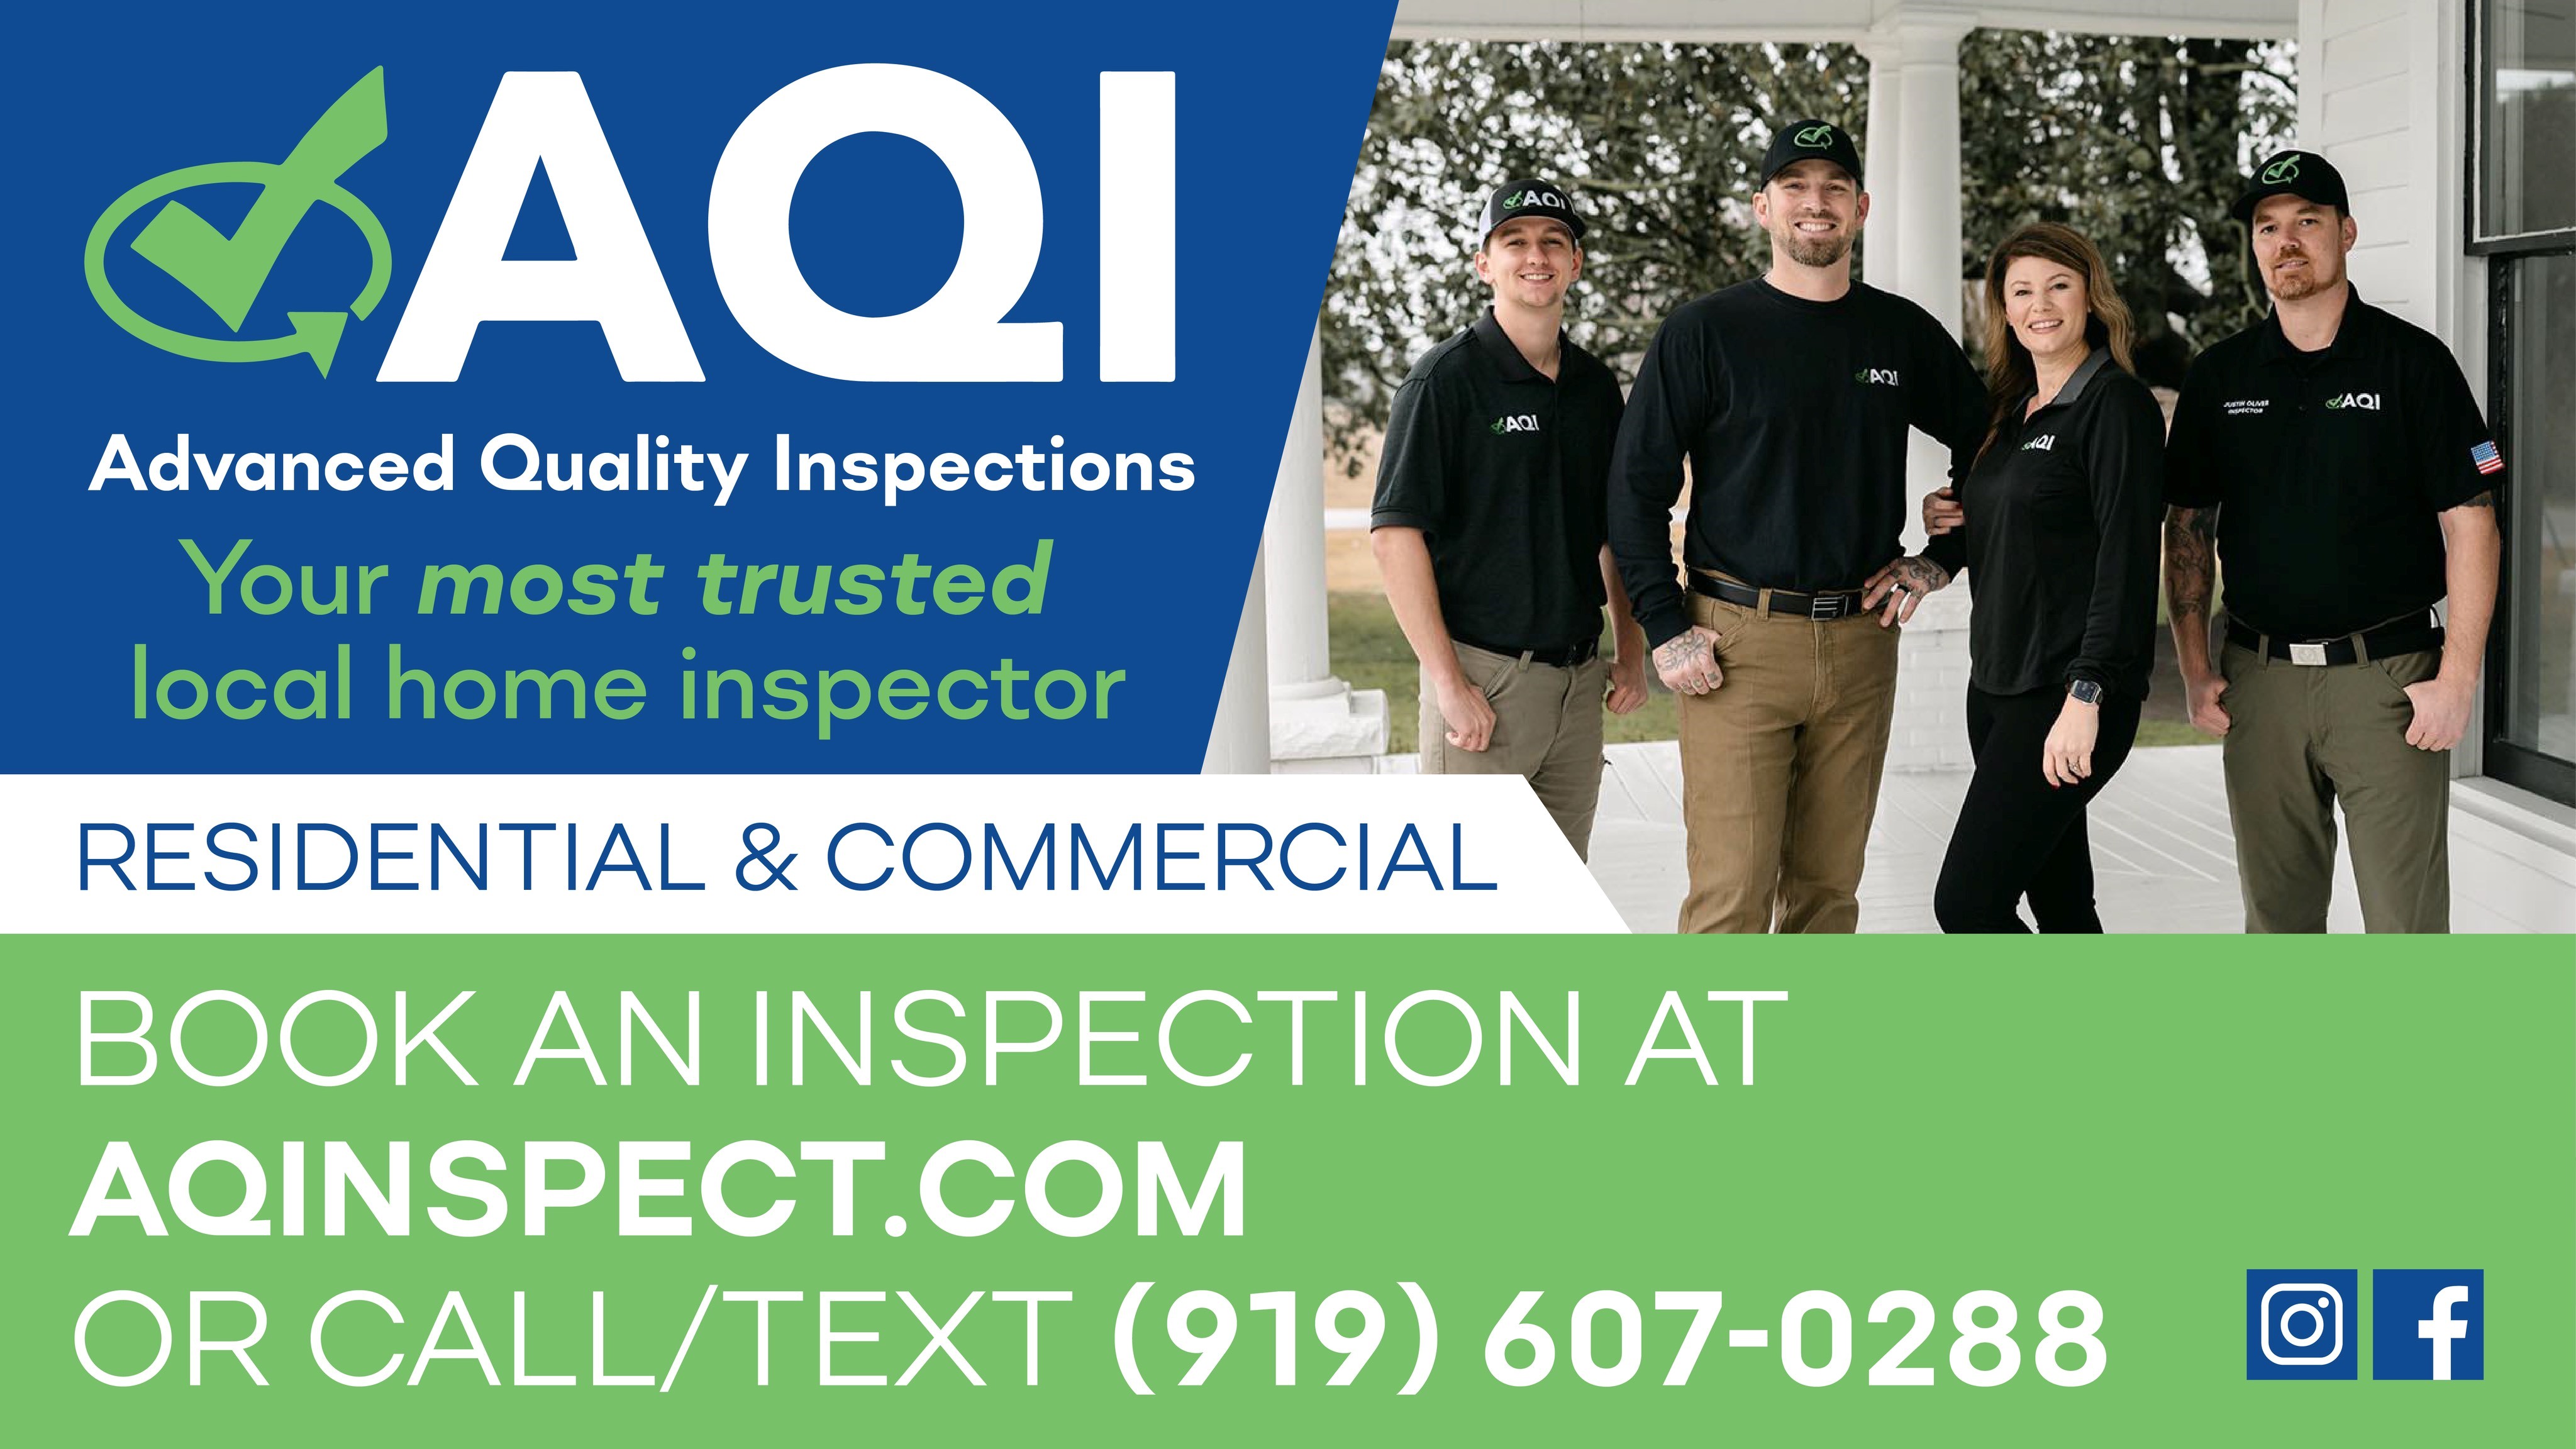 Advanced Quality Inspections LLC